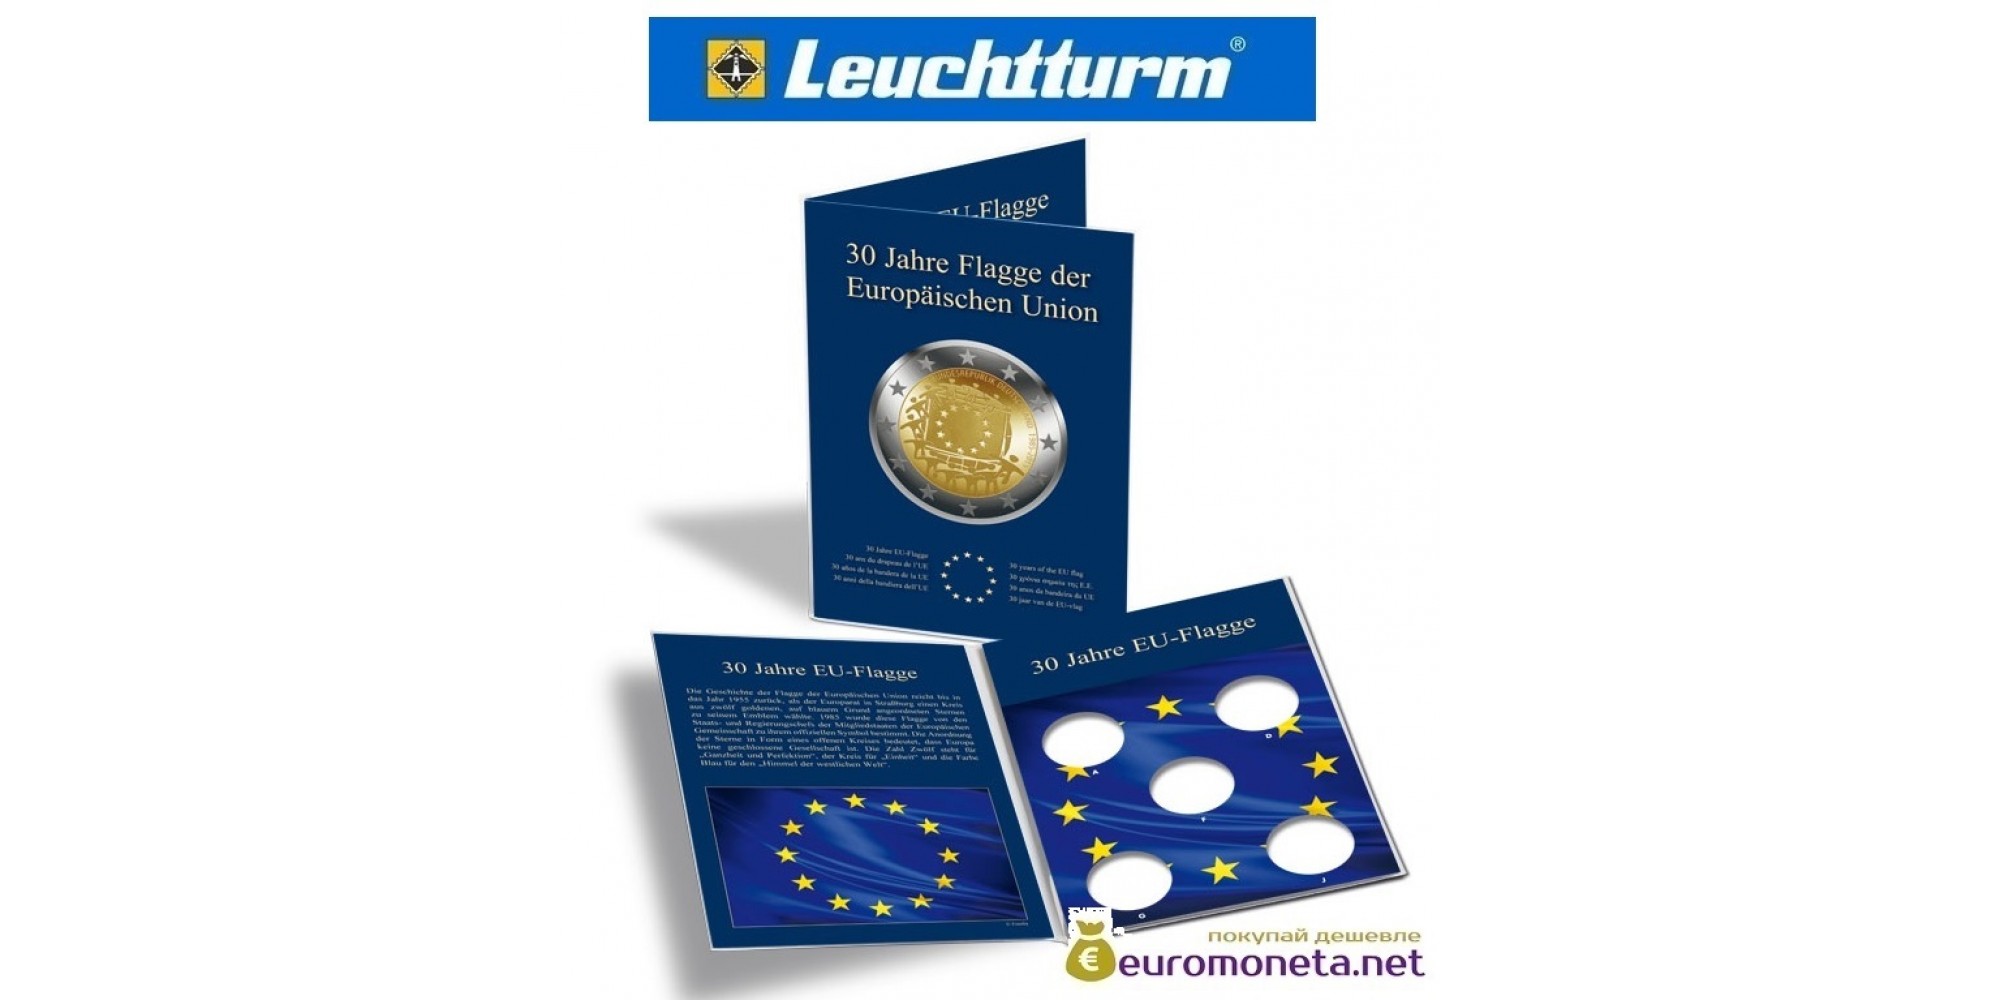 Leuchtturm буклет для хранения немецких монет 2 евро 5 ячеек "30 лет флага ЕС", Германия